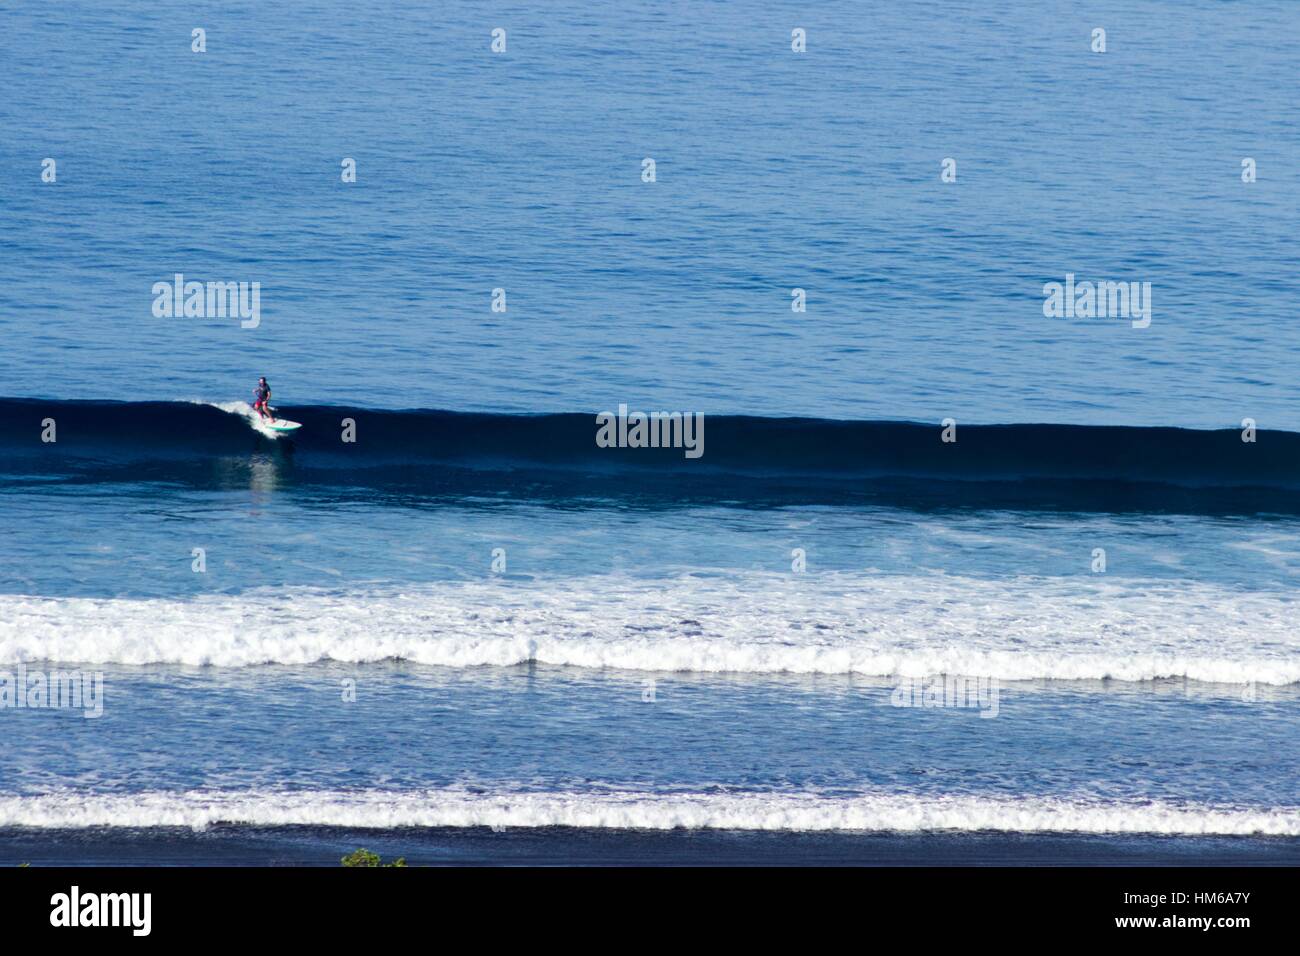 Paddle boarder surfe sur une vague. Banque D'Images